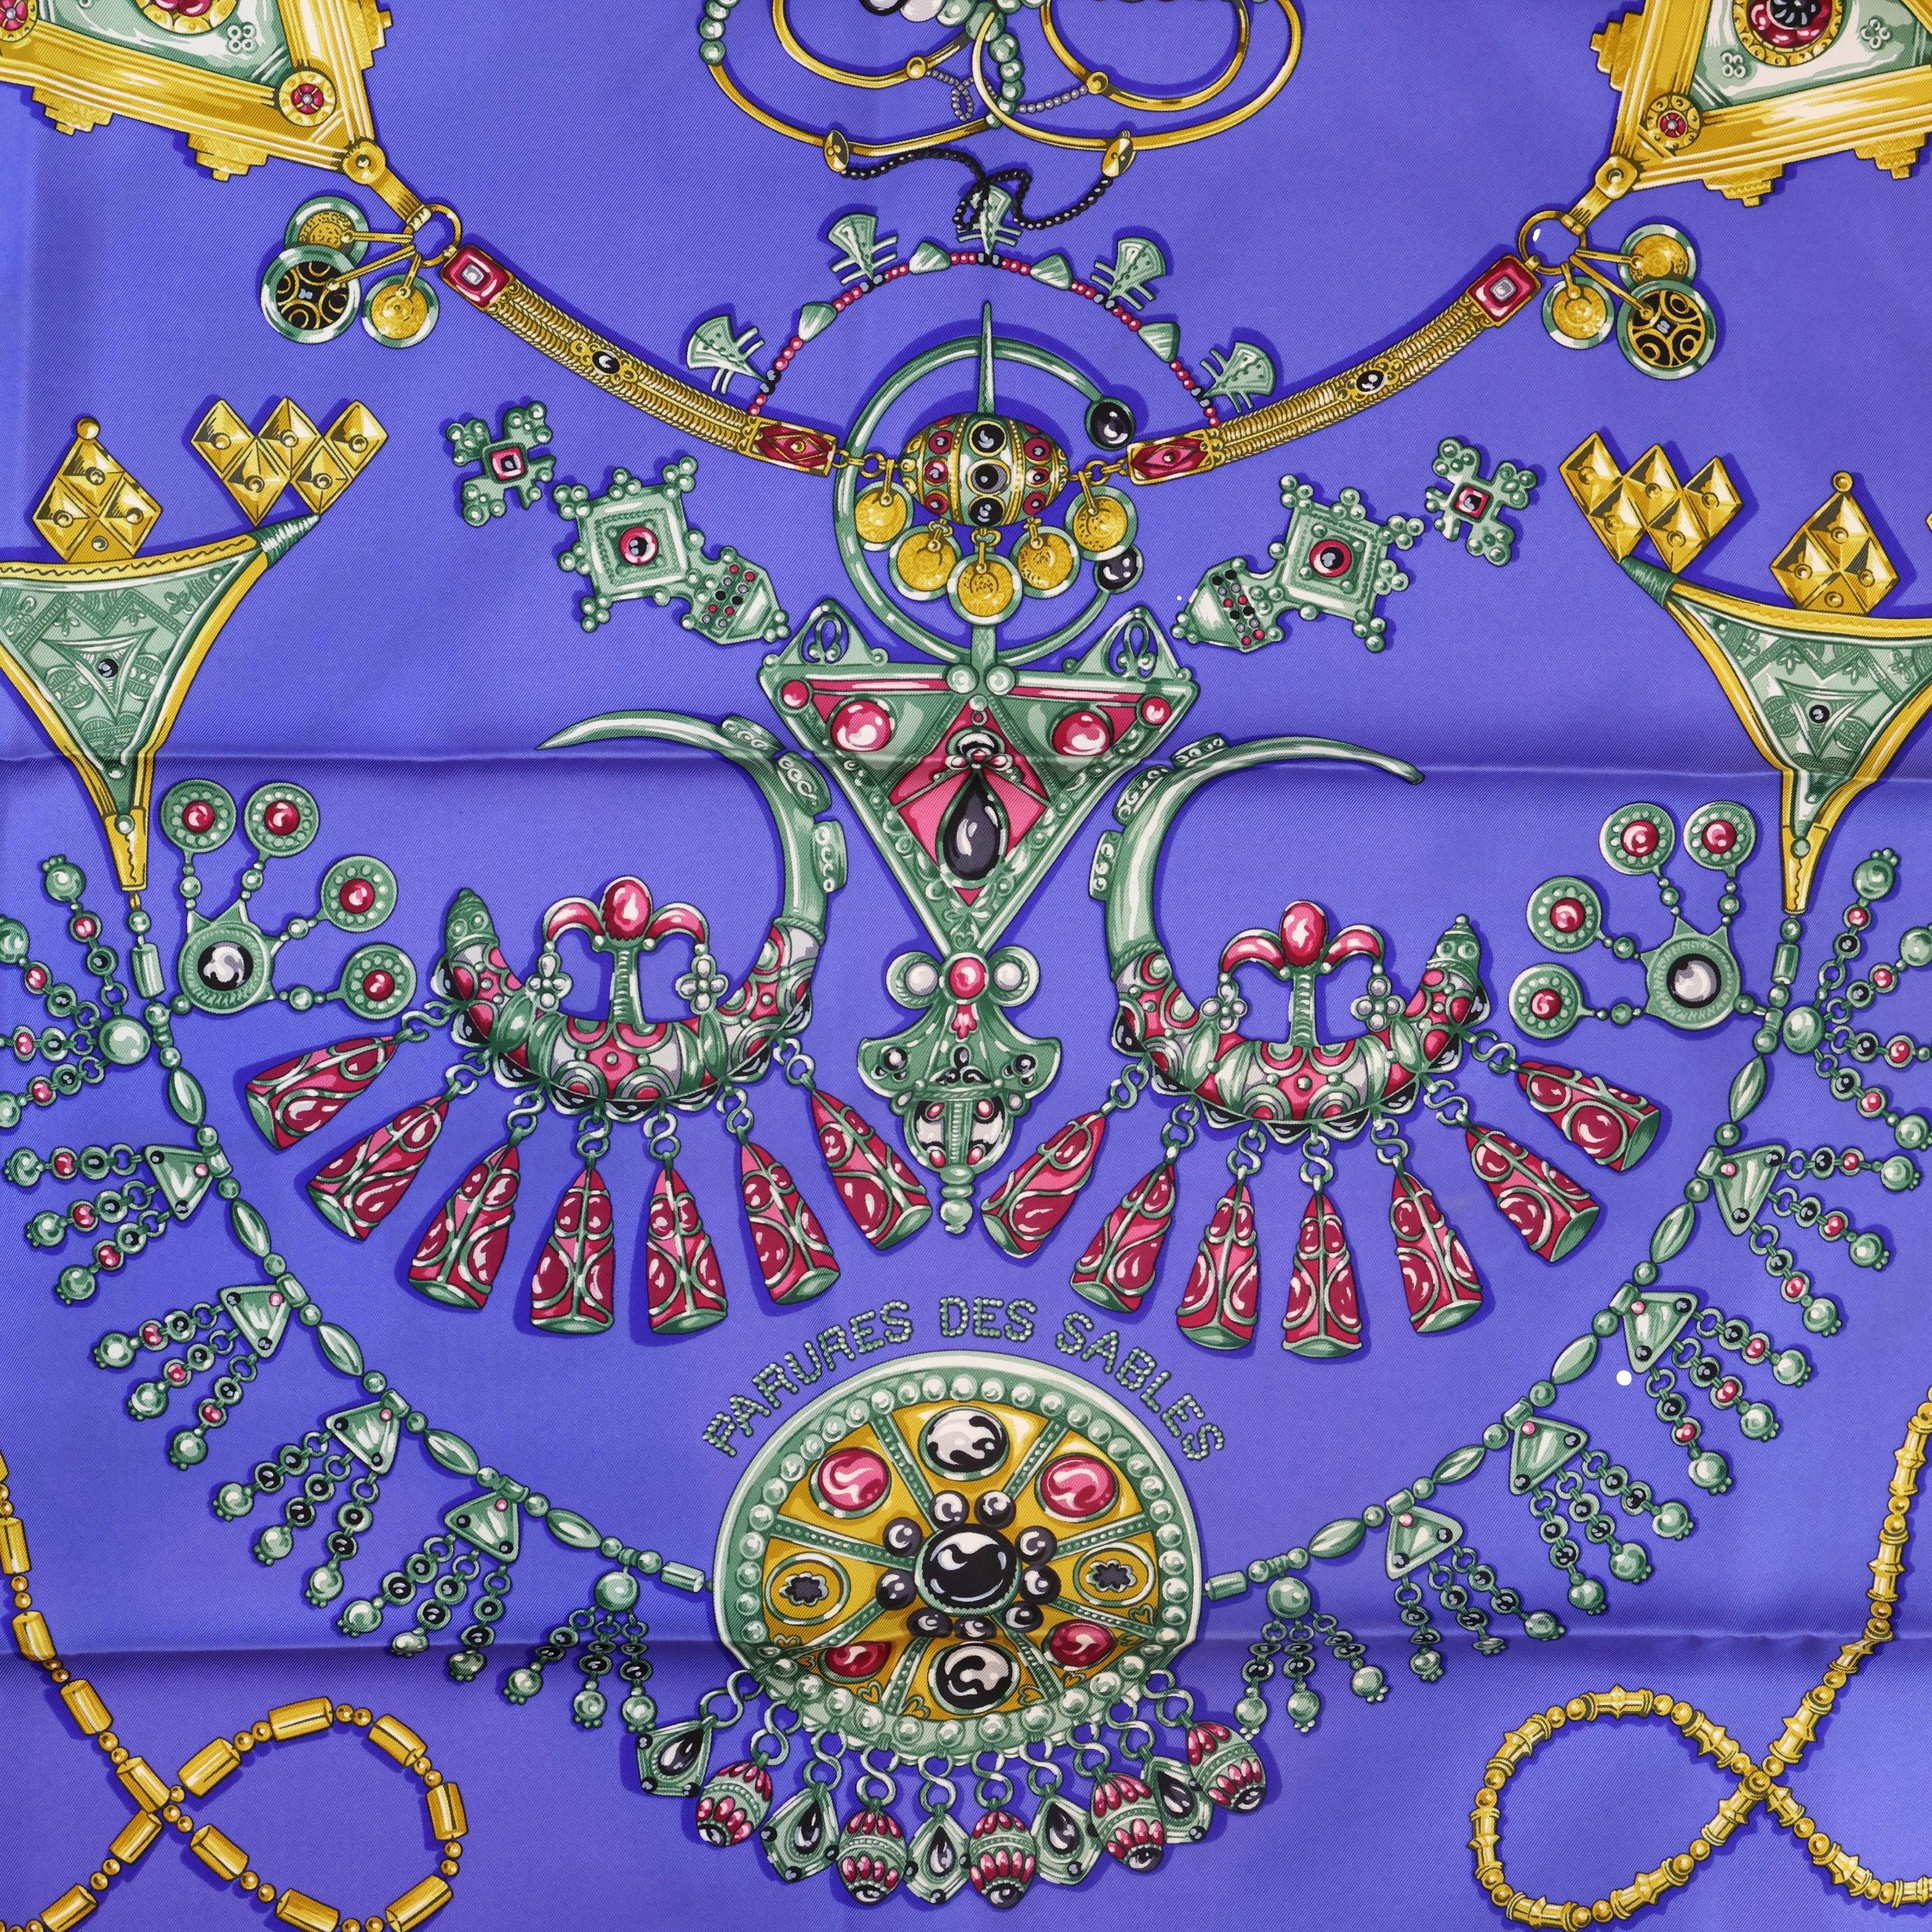 Écharpe en soie Herms « Parures Des Sables » de 90 cm de Laurence Bourthoumieux, 2004. « Paris des Sables », ou « Sand Ornaments » en français, représente une brillante gamme de bijoux rouge et or éclatants sur un fond bleu royal avec une bordure